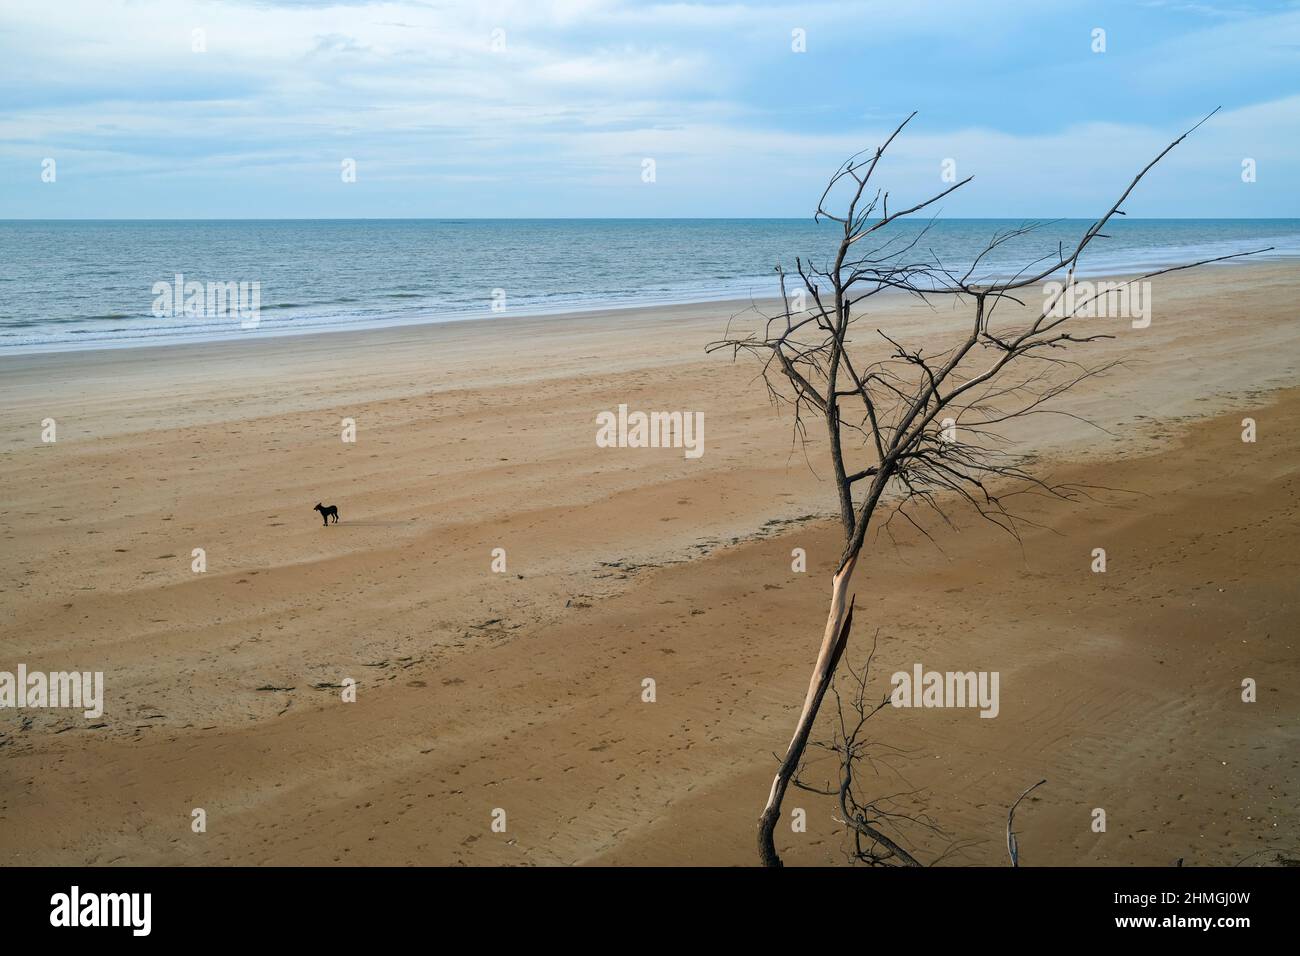 Cane sulla spiaggia deserta e albero morto Foto Stock